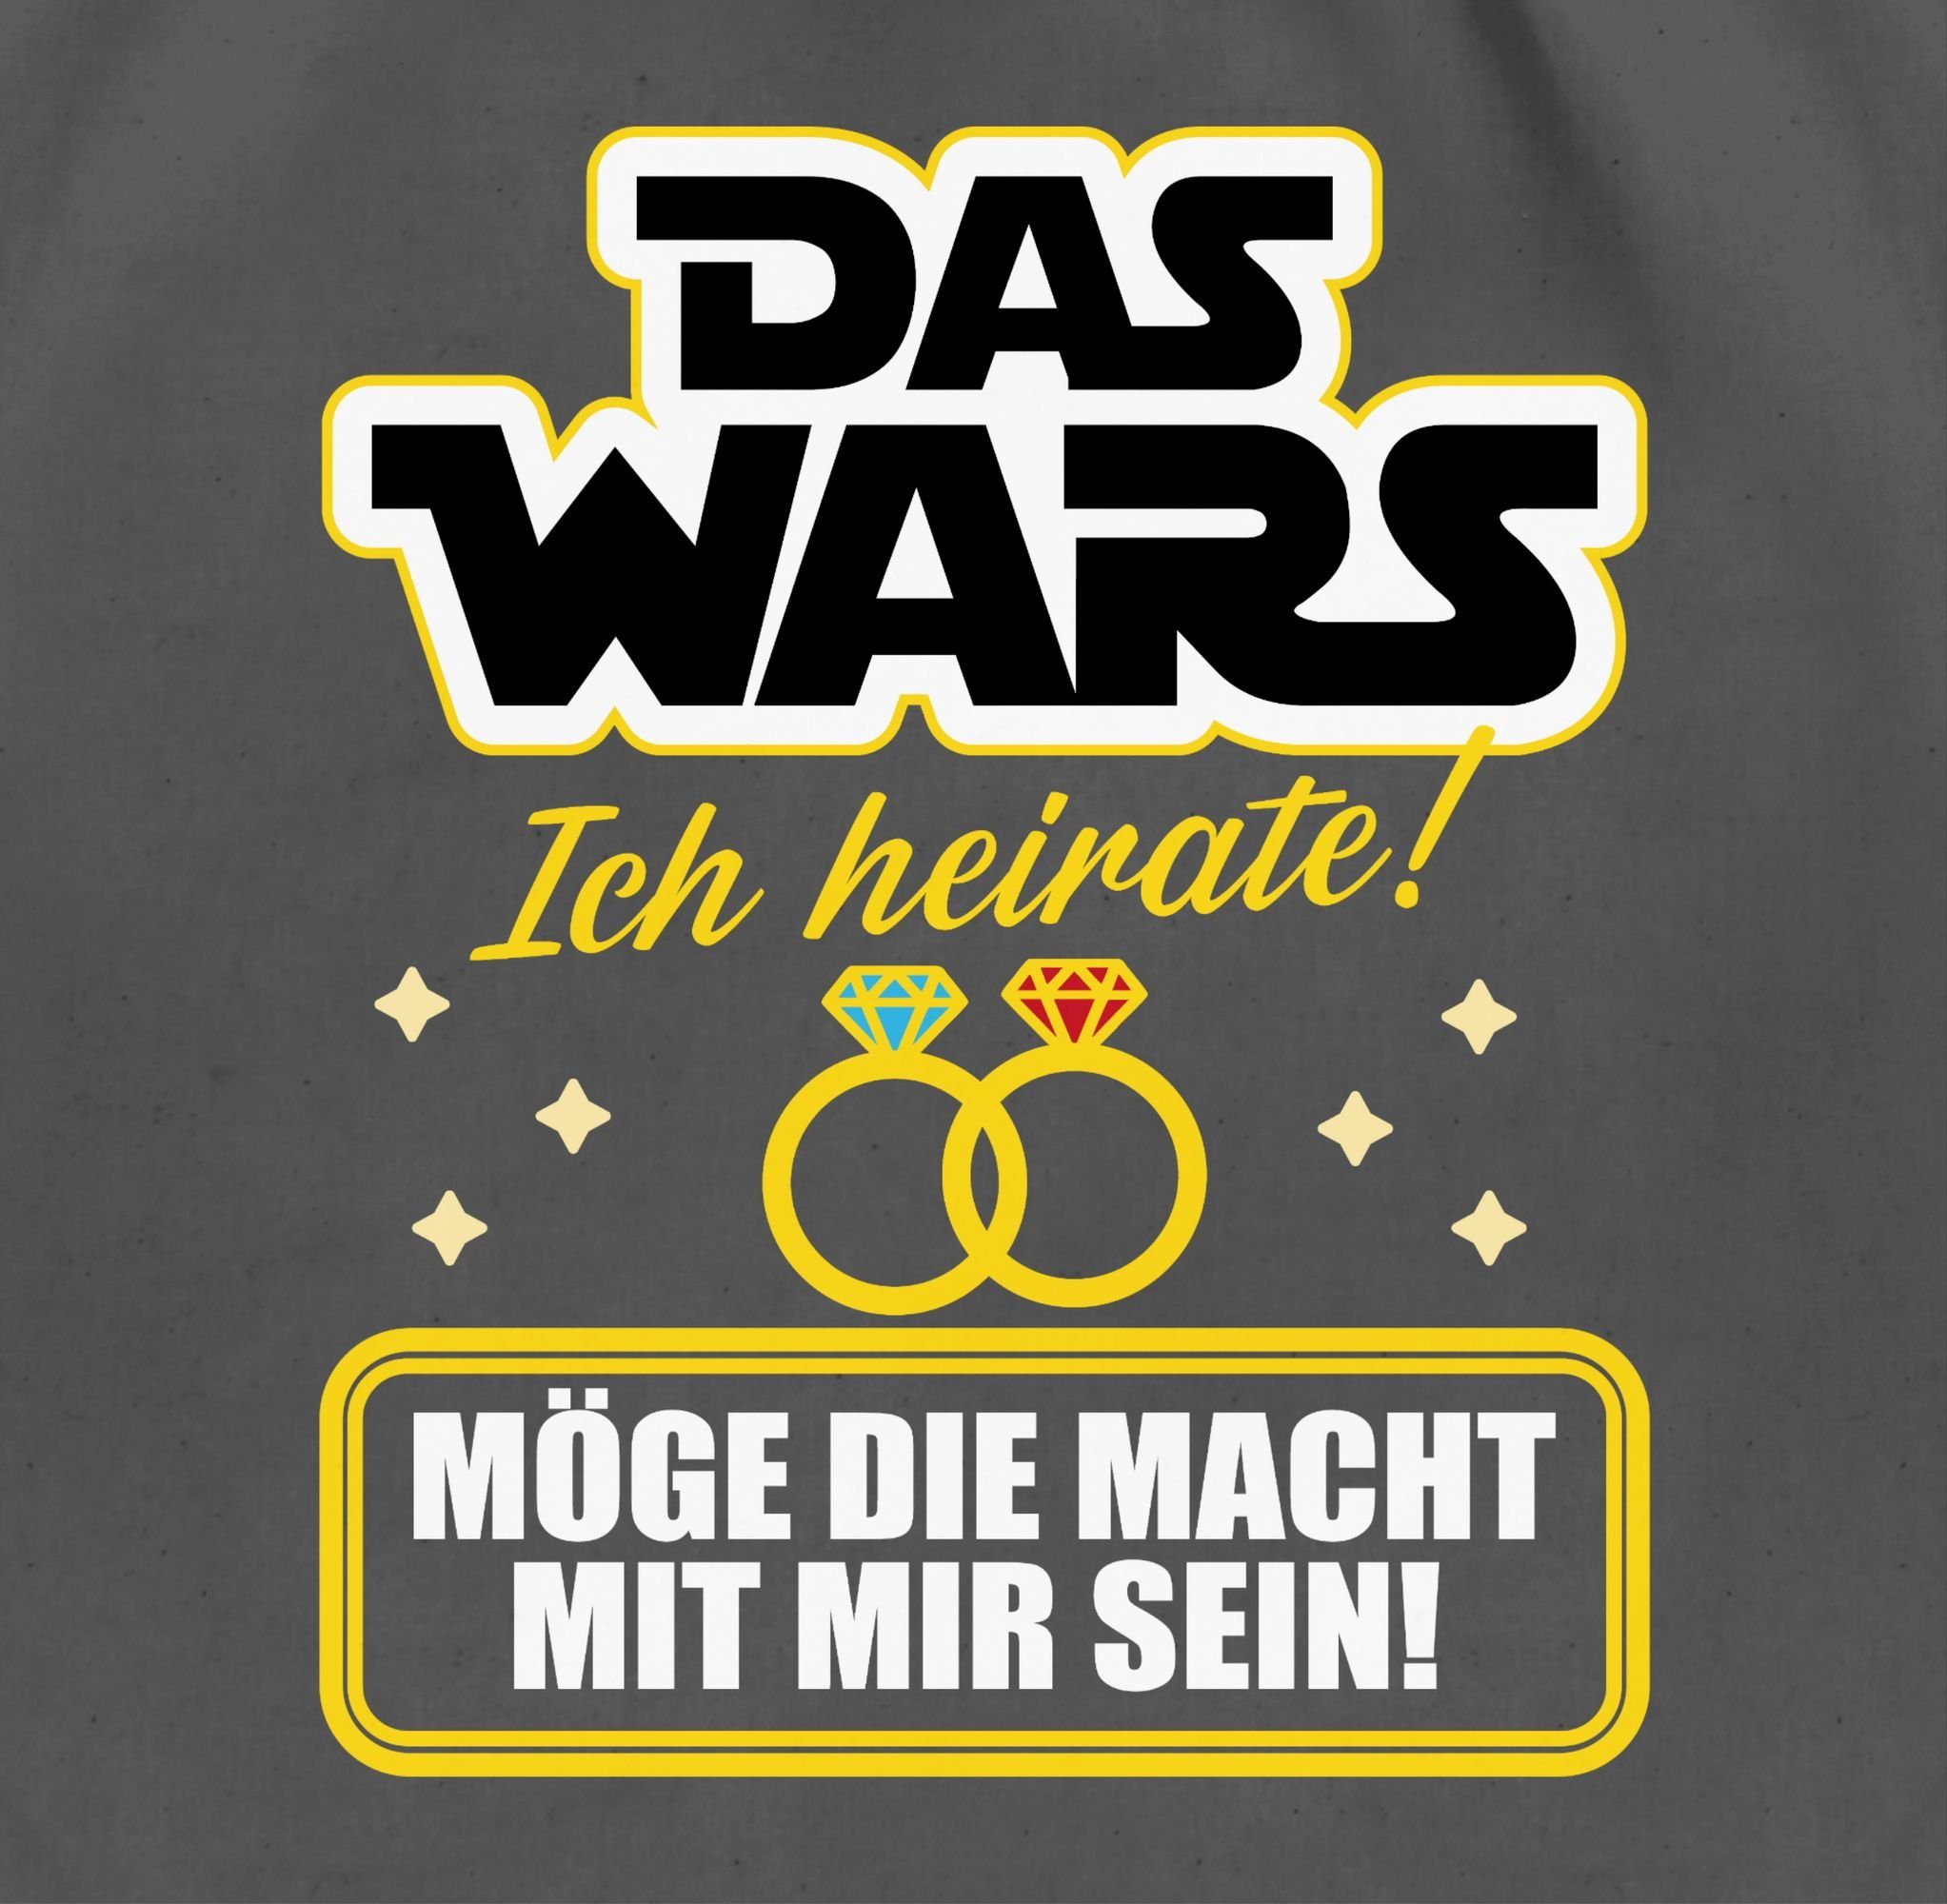 Das Wars - Männer - heirate Dunkelgrau JGA 03 Ich Turnbeutel gelb/weiß, Shirtracer